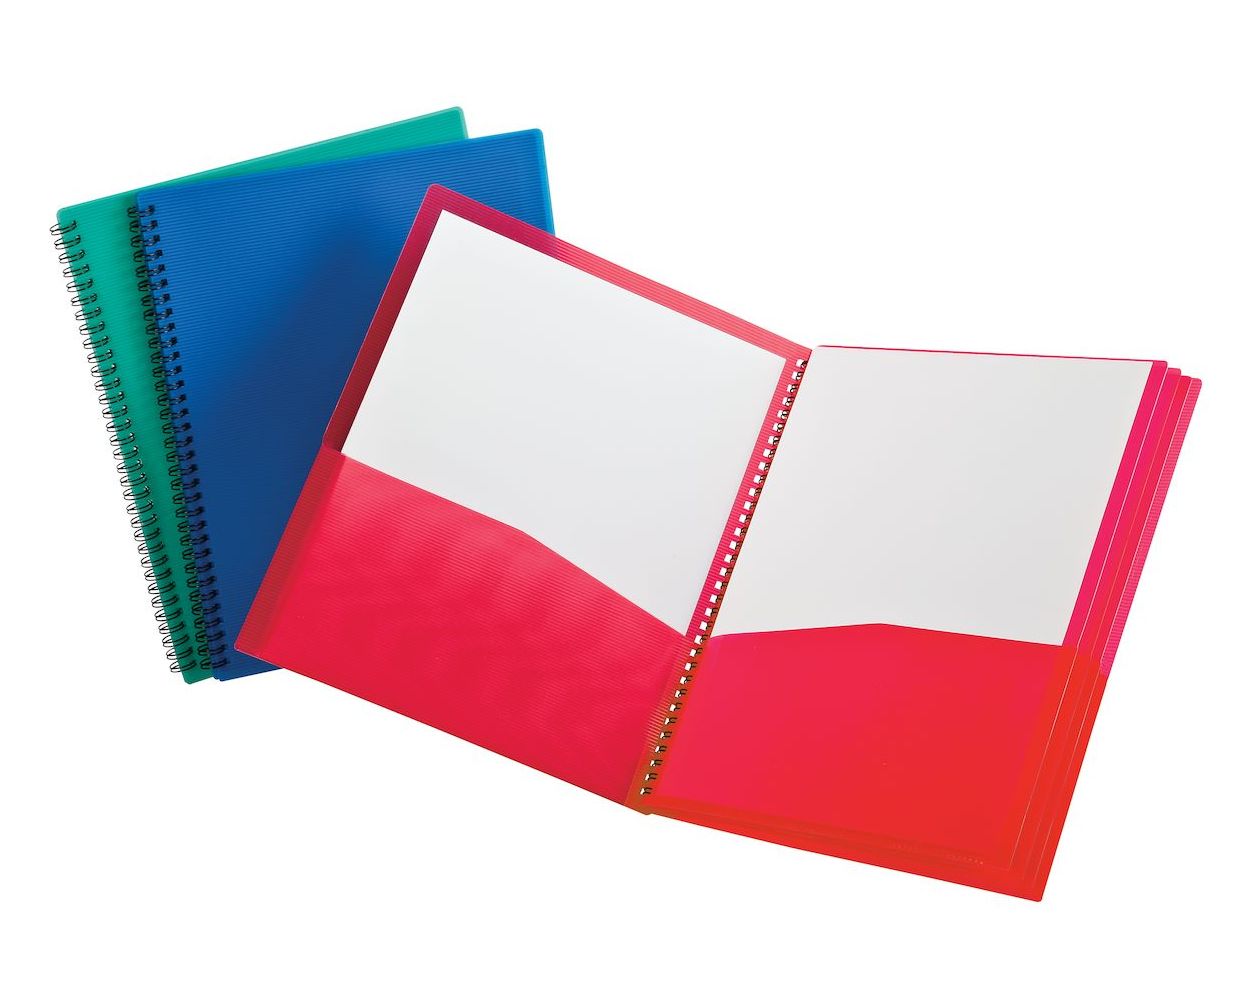 Oxford® Poly 8-Pocket Folder, Letter, Assorted